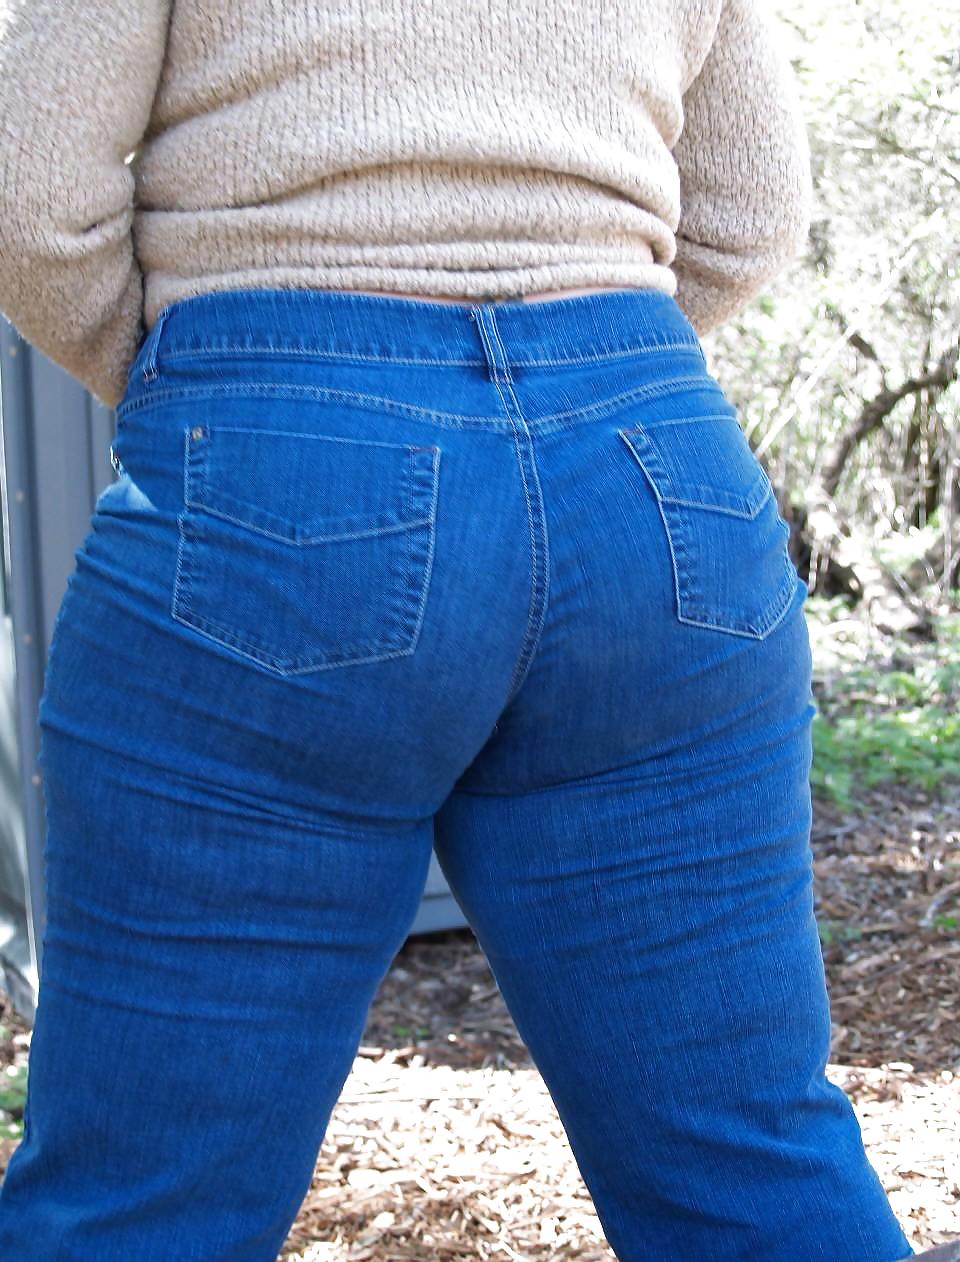 Bbw in jeans stretti! collezione #4
 #19076714